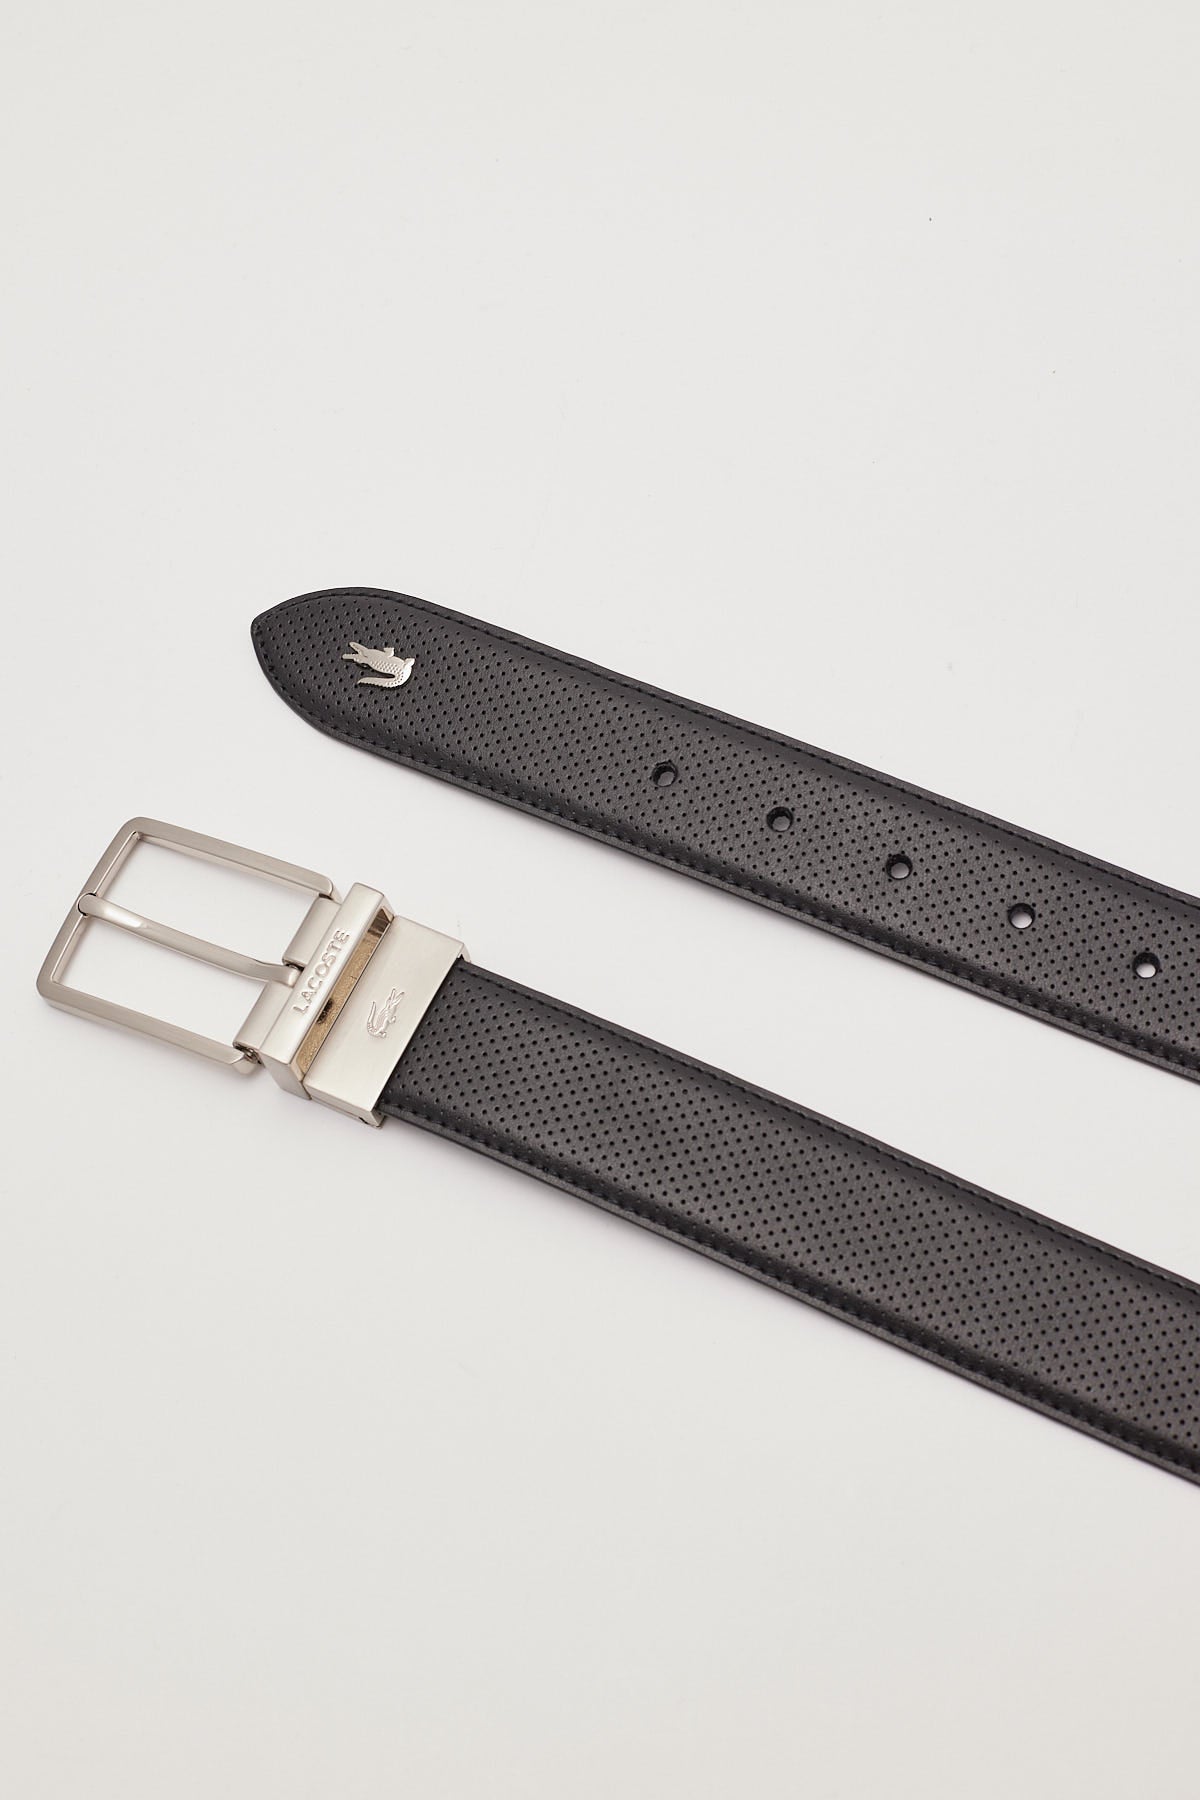 Lacoste Elegance 35mm Leather Belt Black